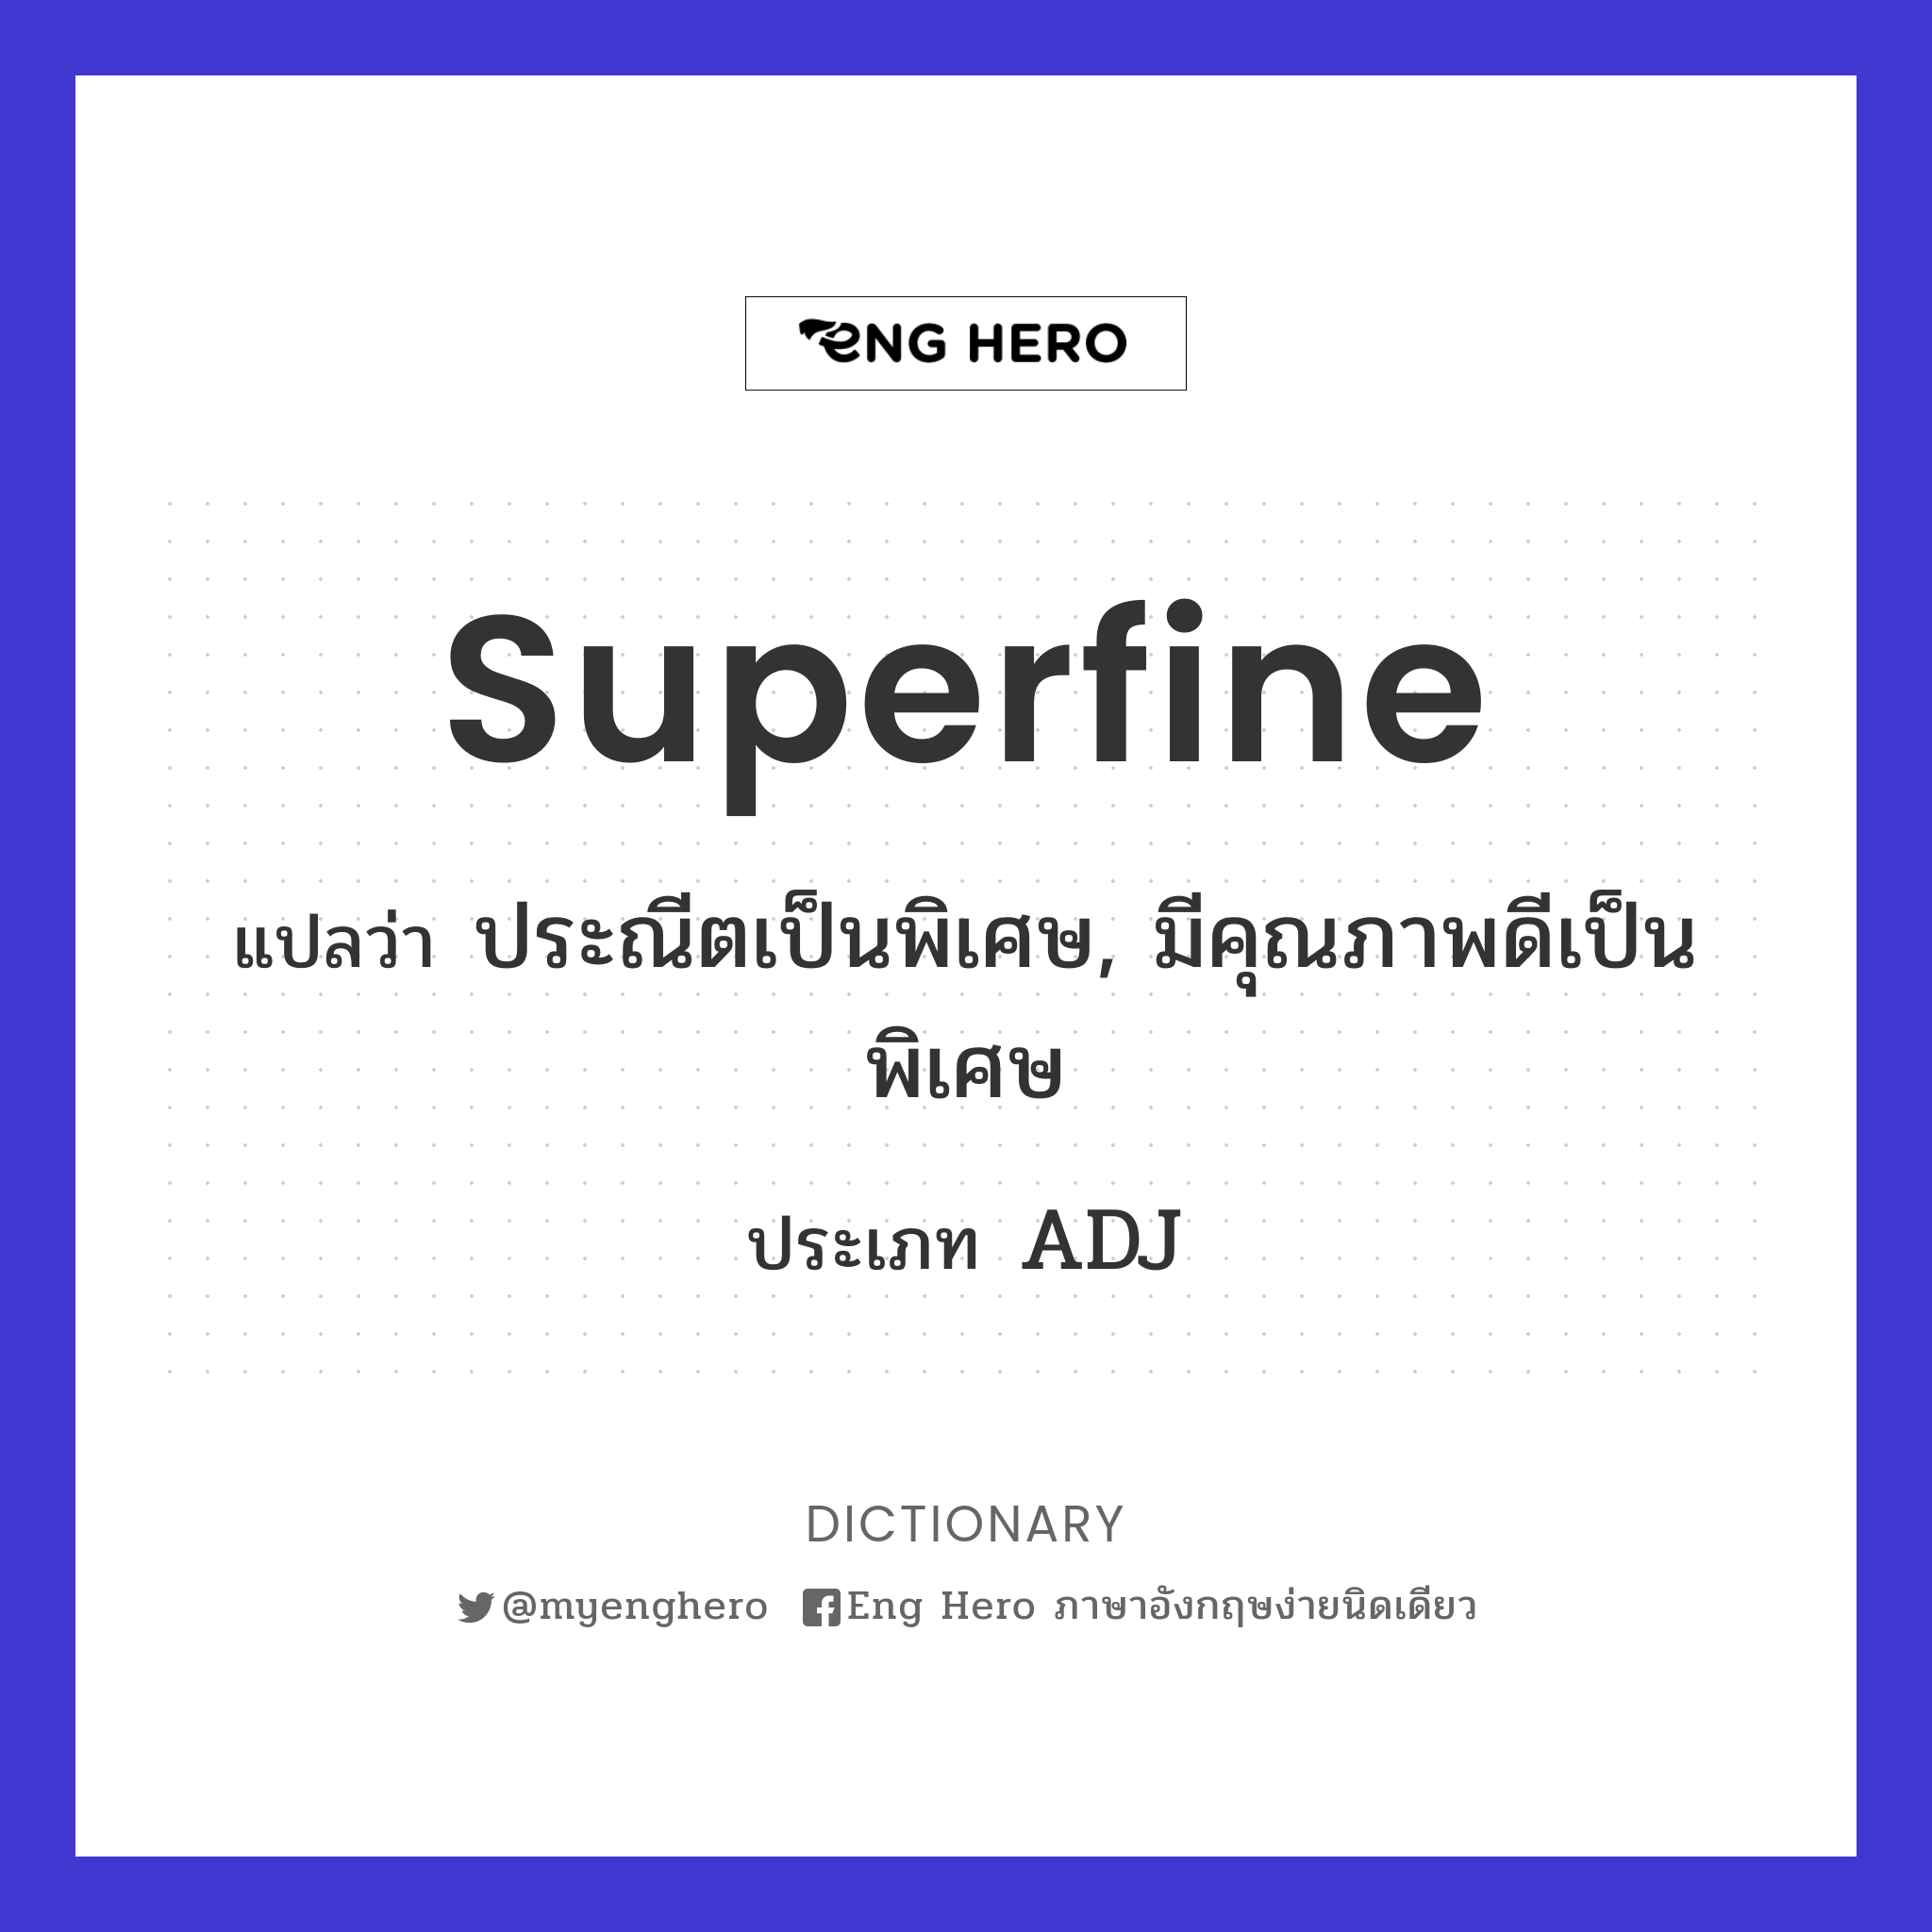 superfine